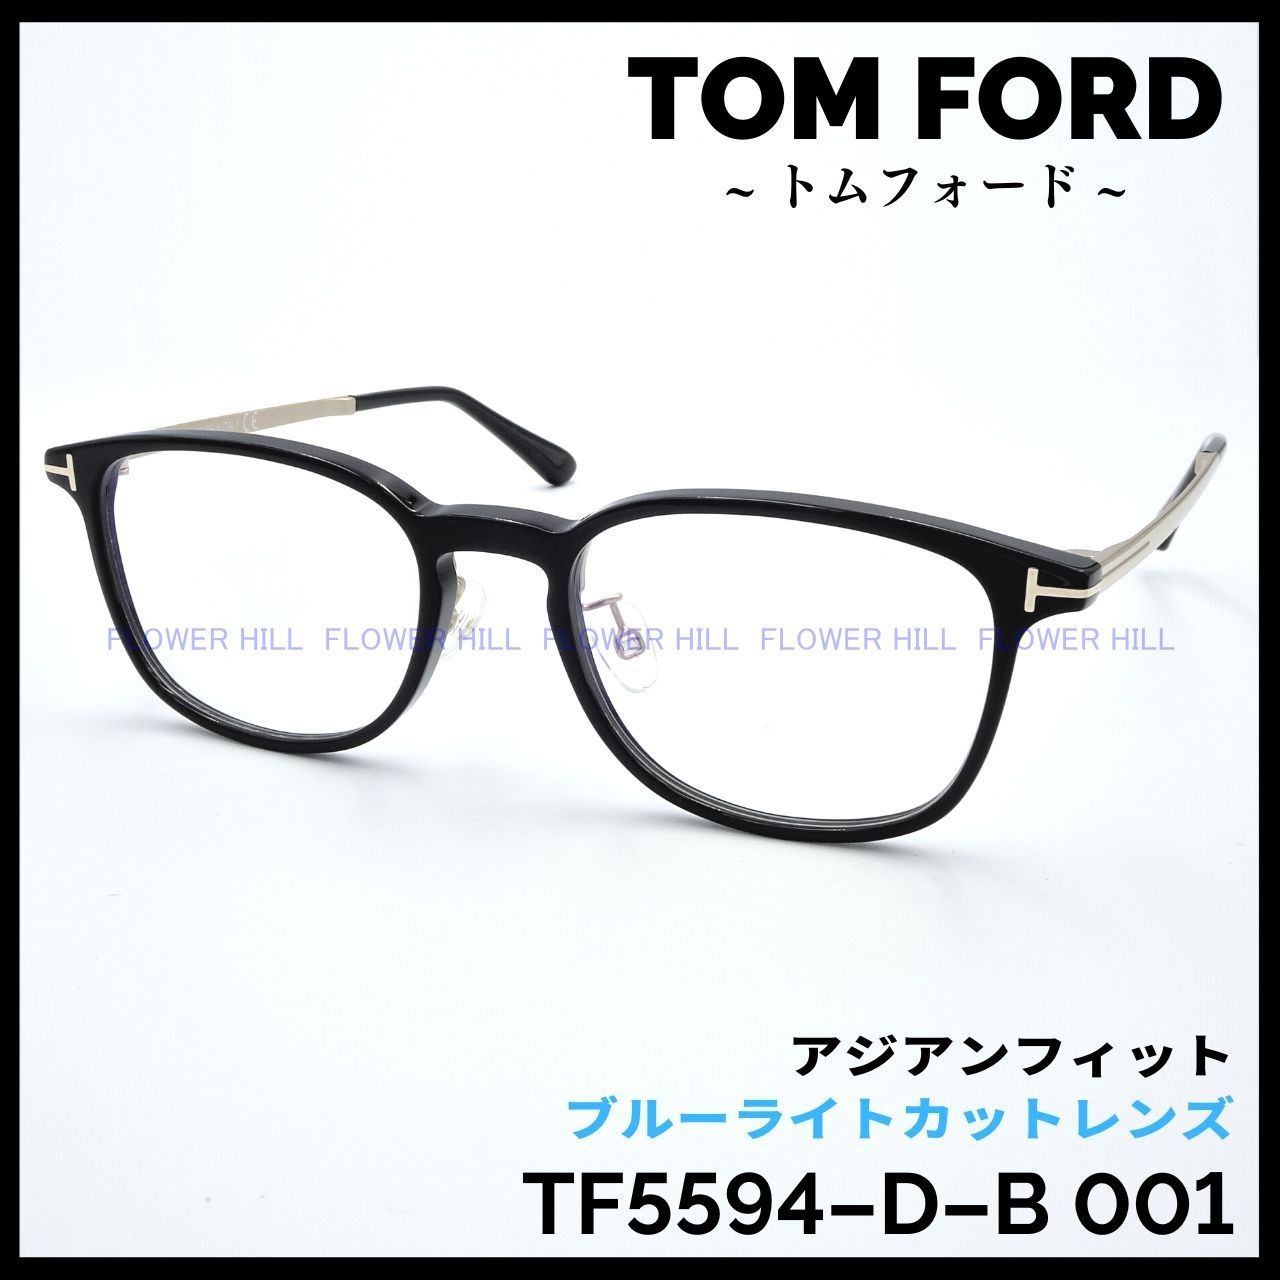 TOM FORD トムフォード メガネ TF5594-D-B 001 アジアンフィット